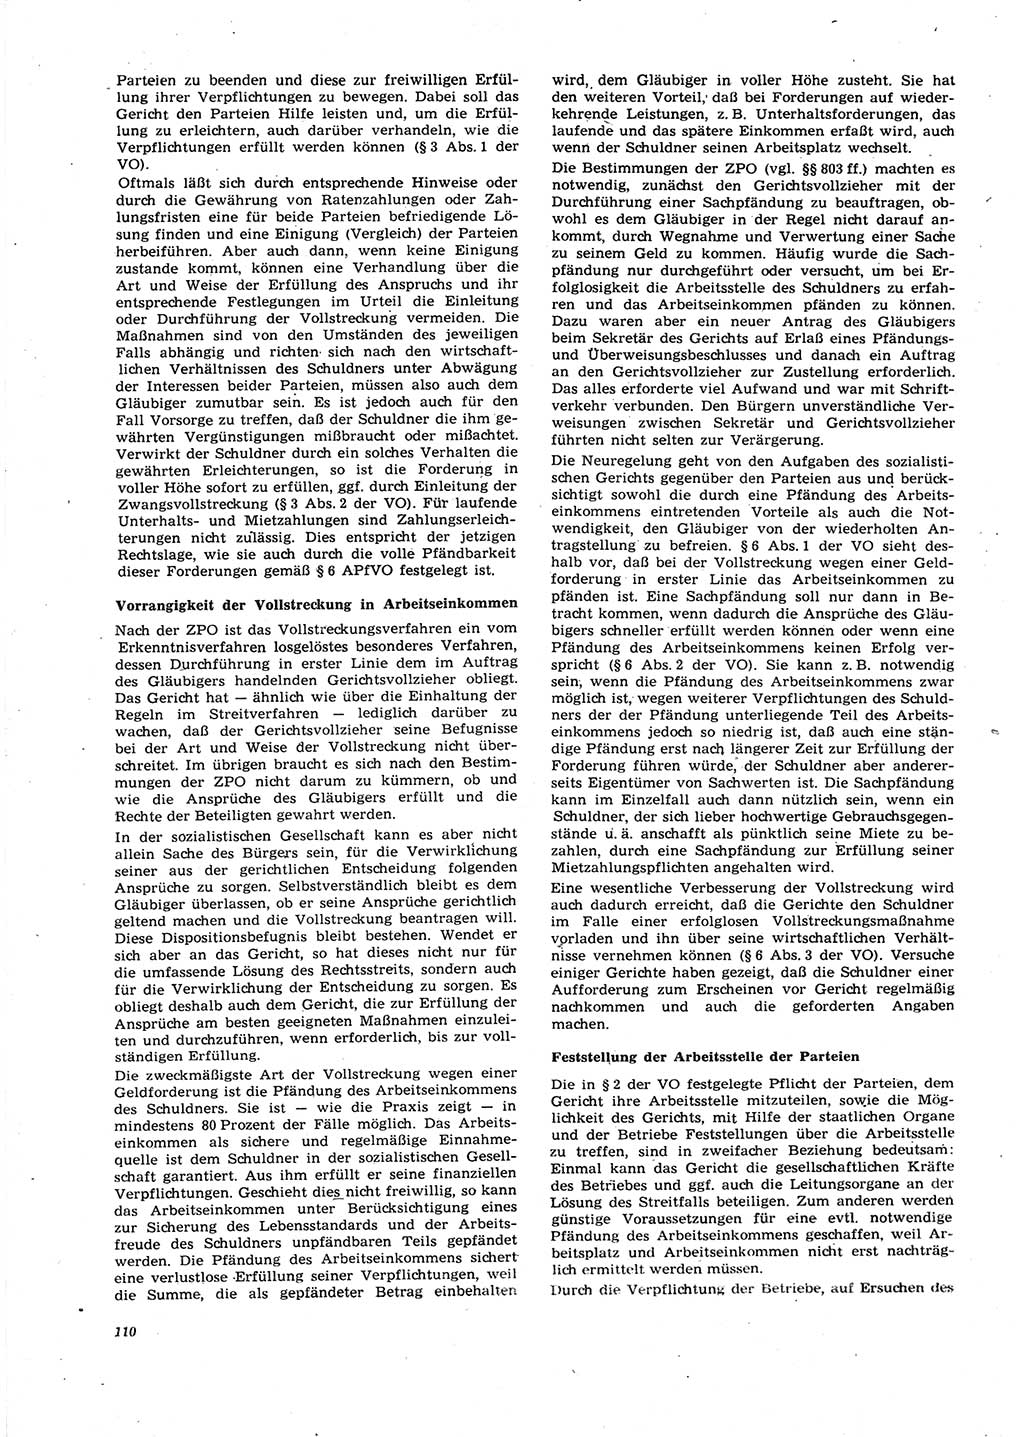 Neue Justiz (NJ), Zeitschrift für Recht und Rechtswissenschaft [Deutsche Demokratische Republik (DDR)], 27. Jahrgang 1973, Seite 110 (NJ DDR 1973, S. 110)